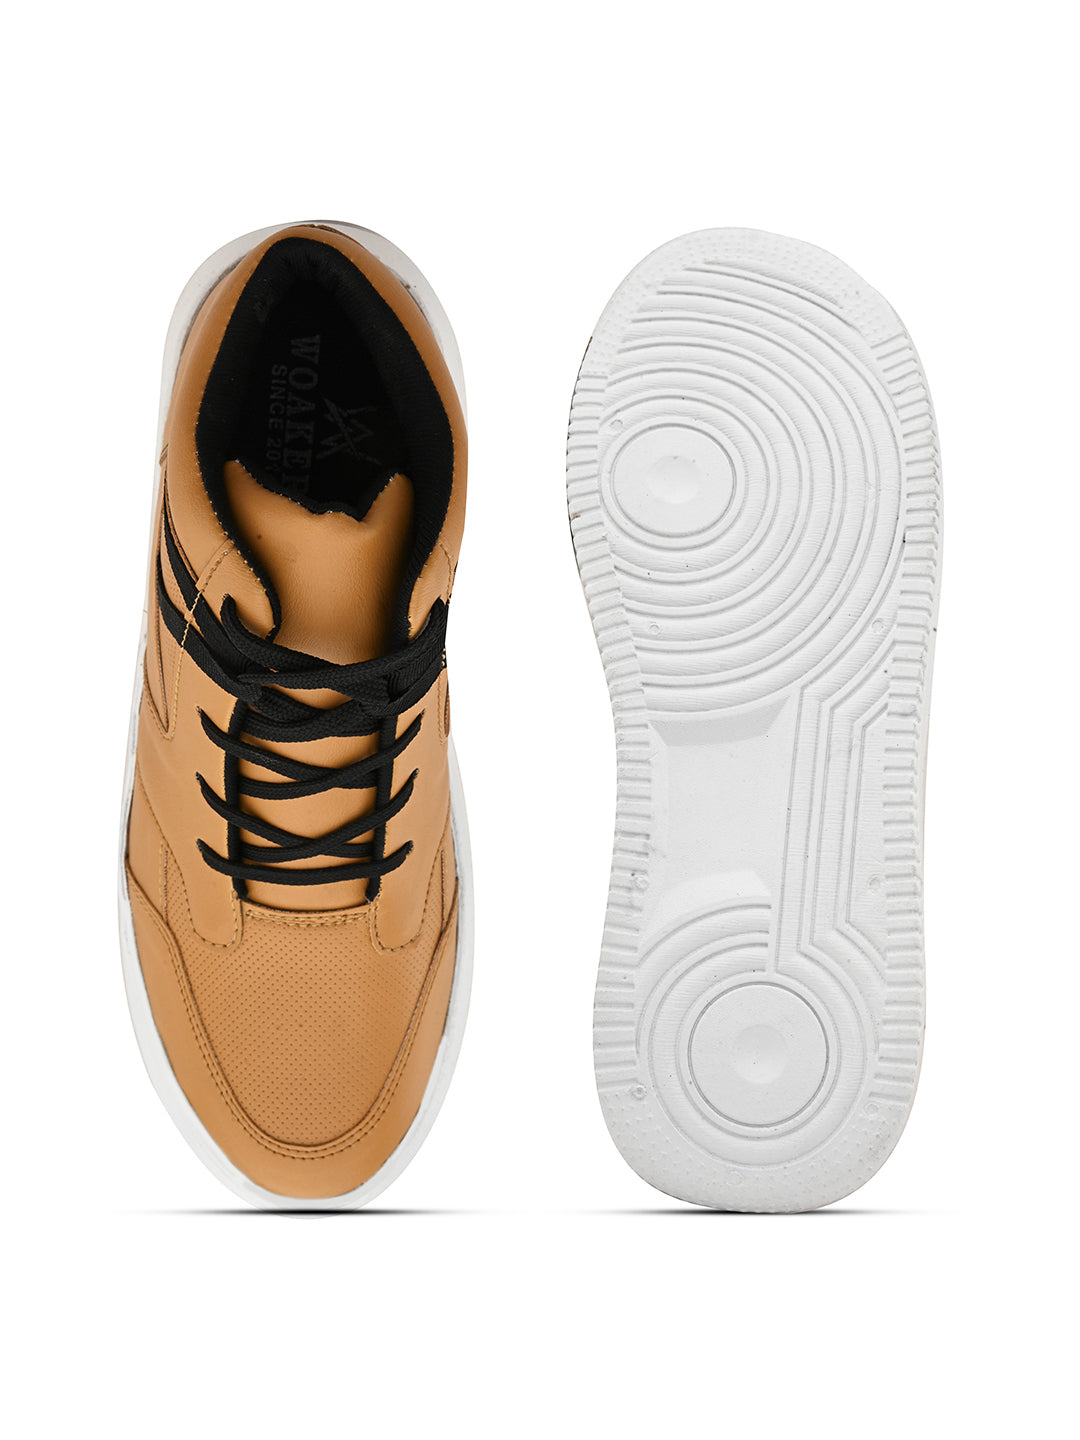 Woakers Mens Comfort Shoes  HR-030-TAN